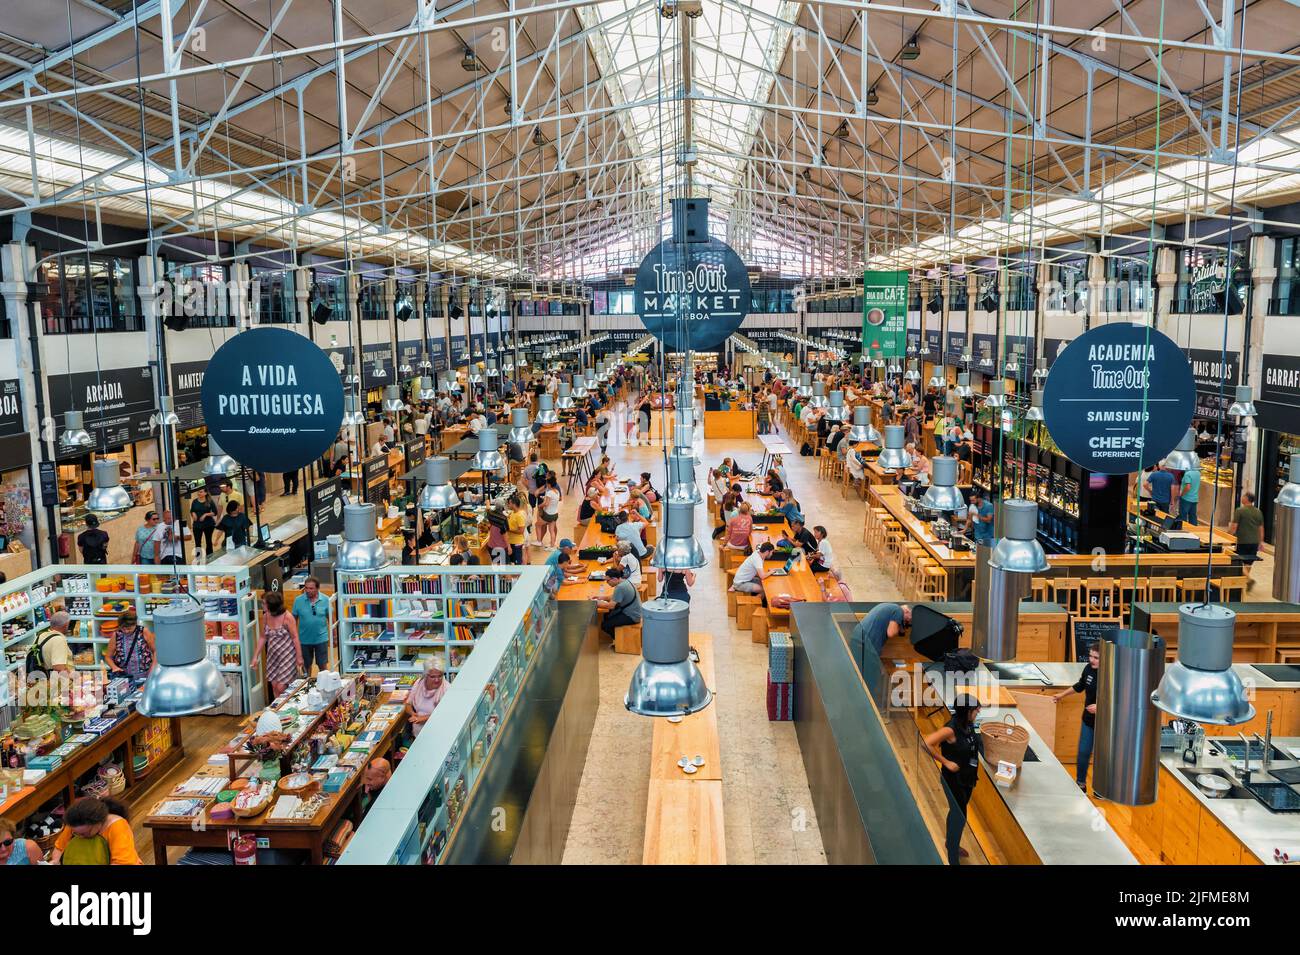 Mercado da Ribeira, Food Court, Cais de Sodre, Lisbon, Portugal Stock Photo